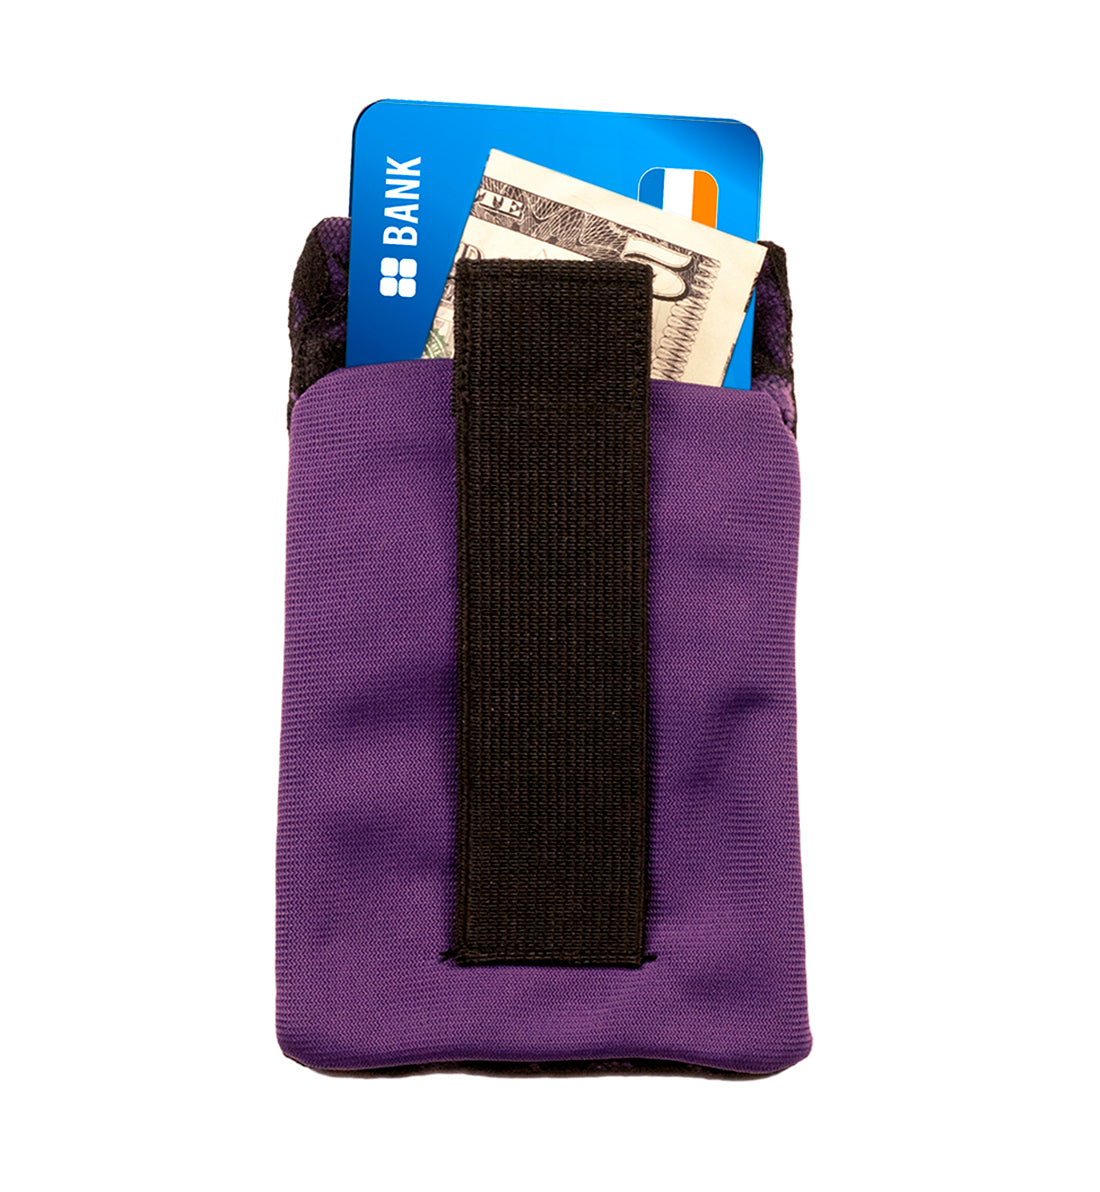 Braza Secret Stash- Bra Pocket (8090),Purple - Purple,One Size